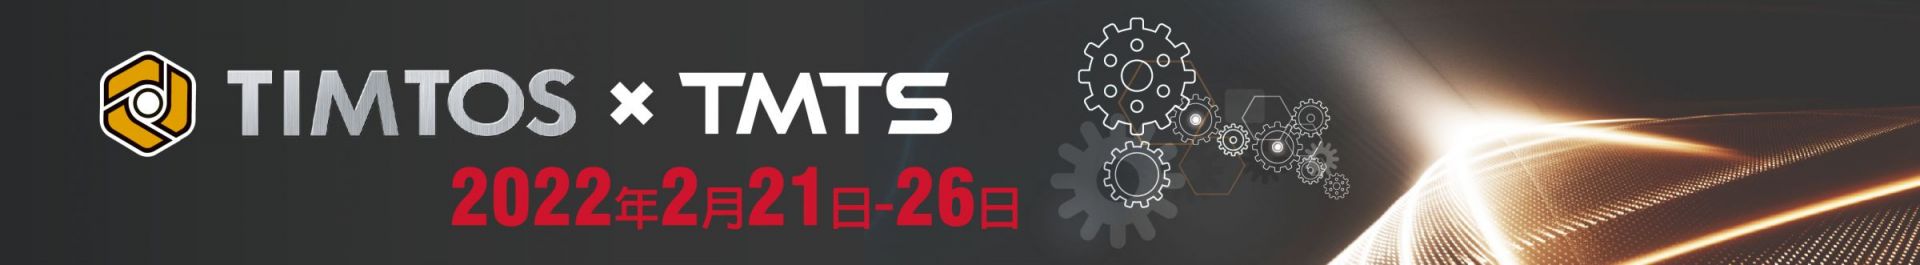 TIMTOS x TMTS 2022 Triển lãm công cụ máy móc quốc tế tại Đài Bắc